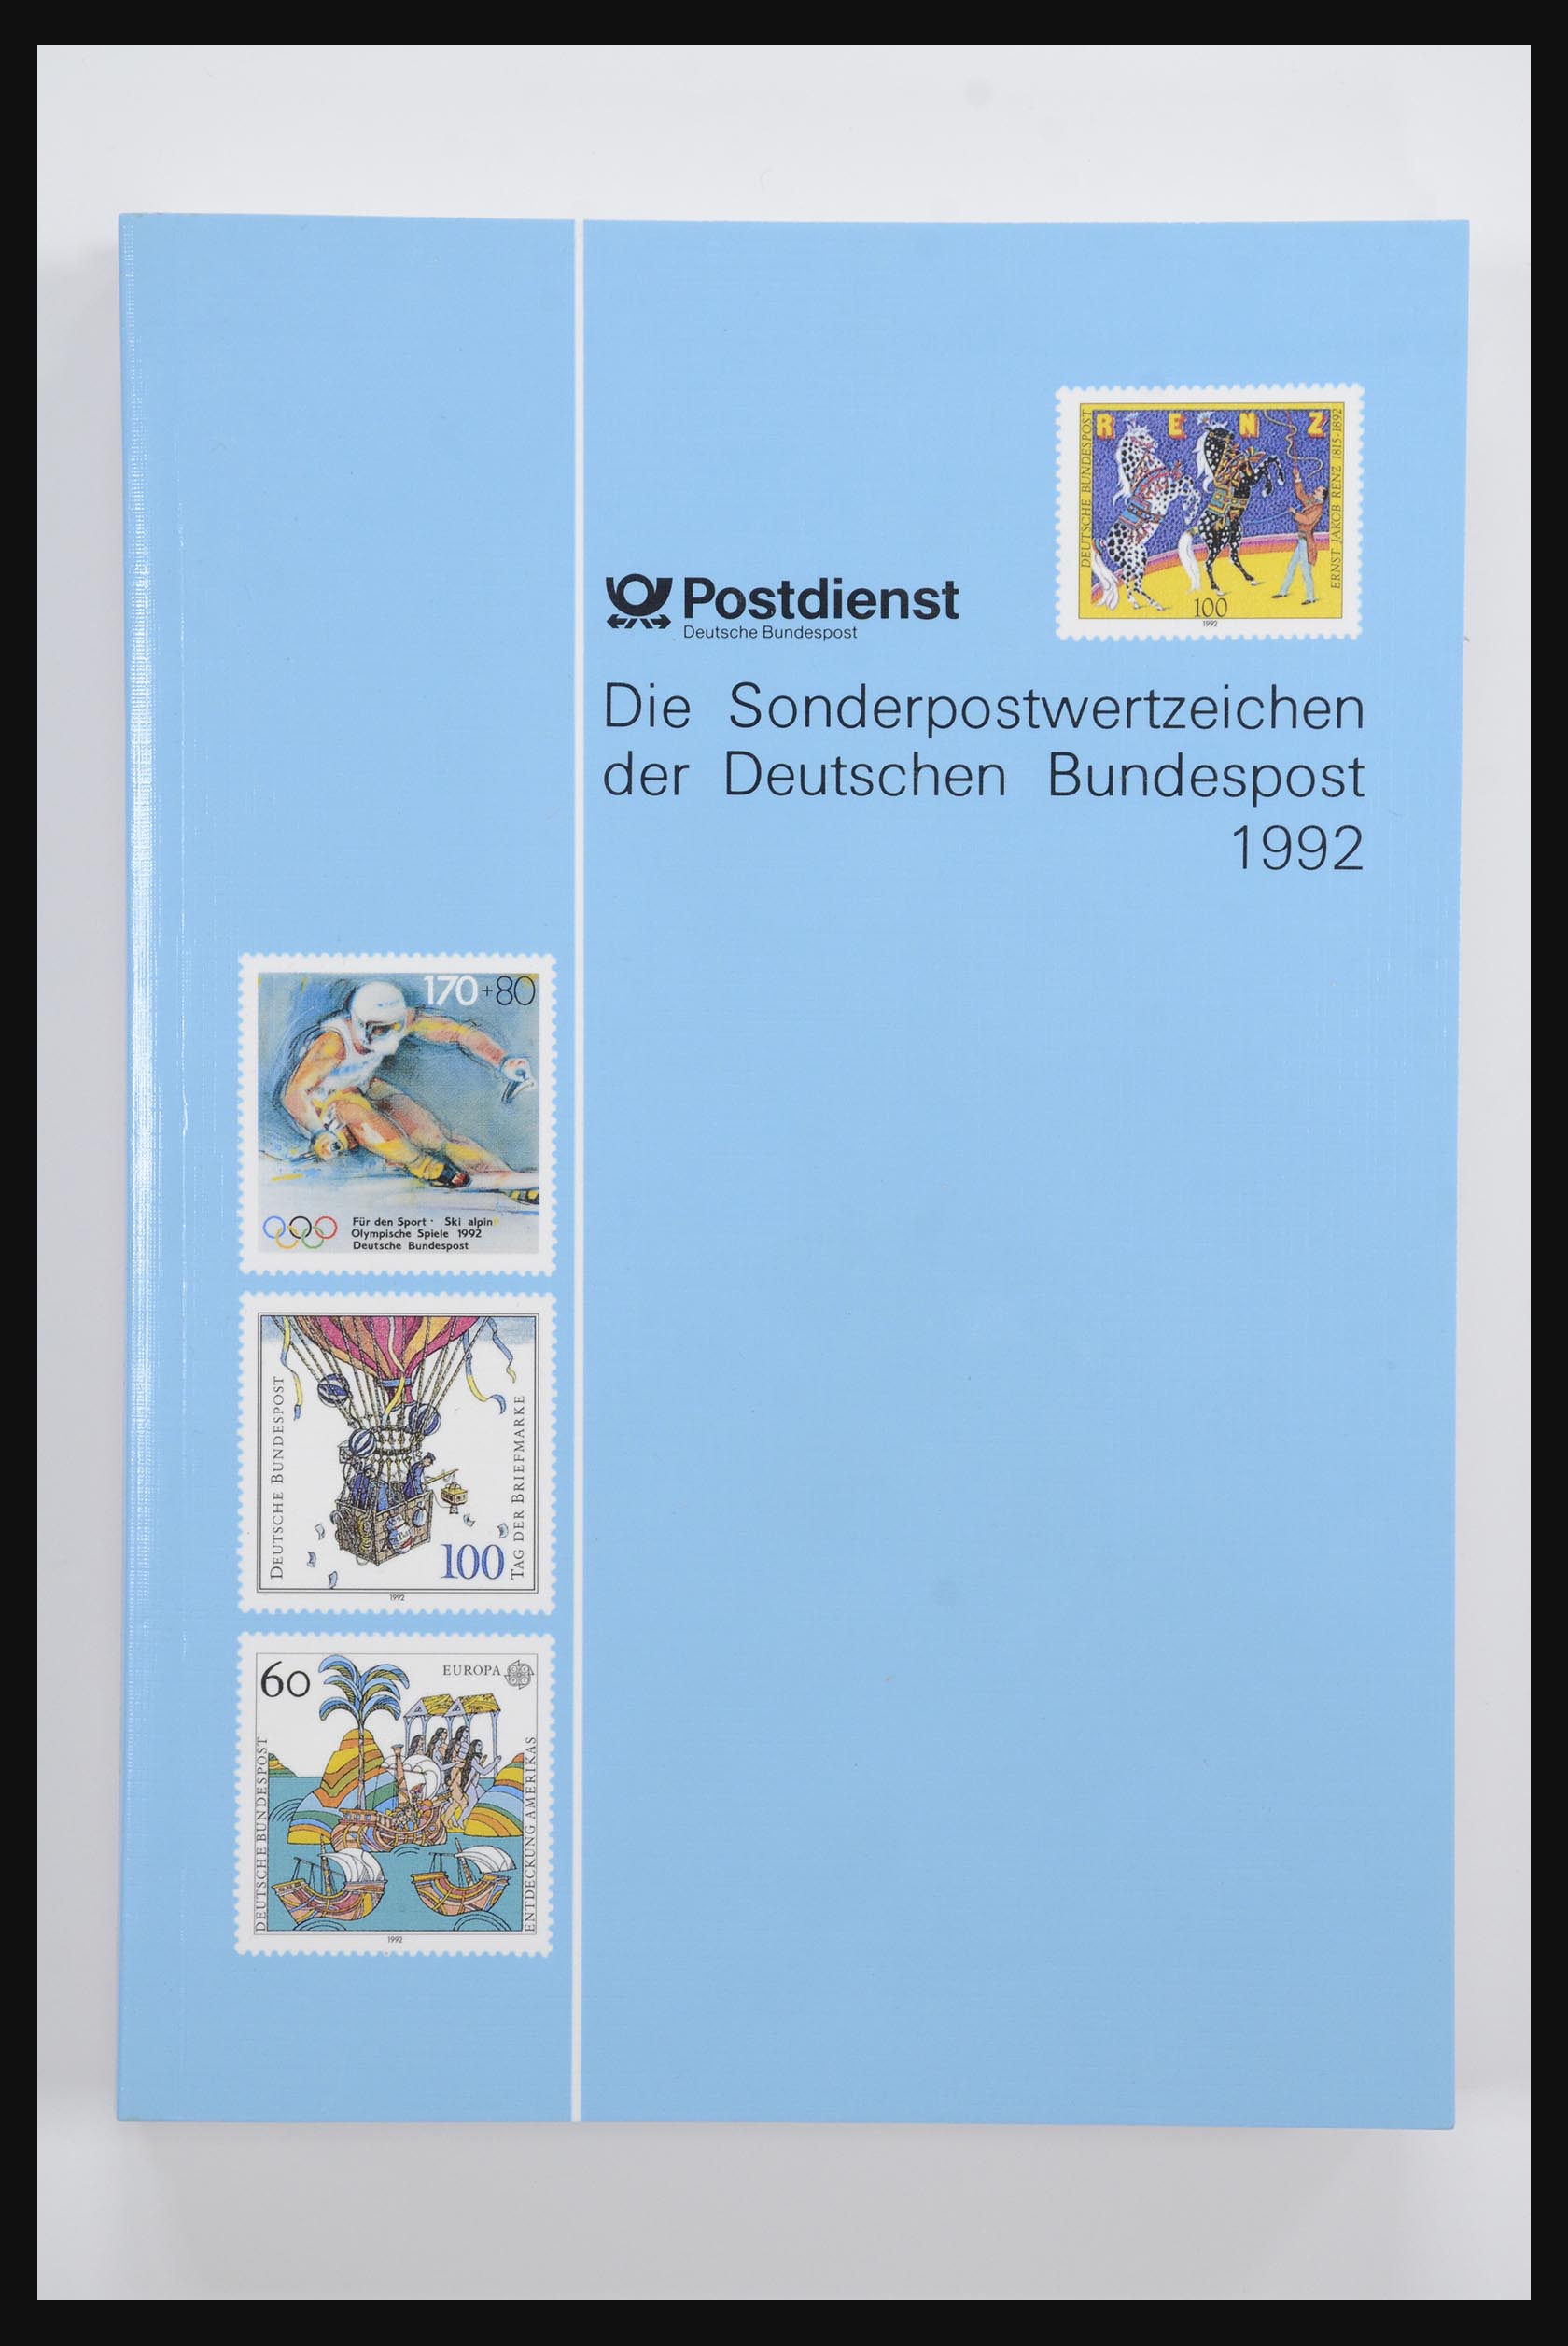 31836 019 - 31836 Bundespost jaarboeken 1974-1999.